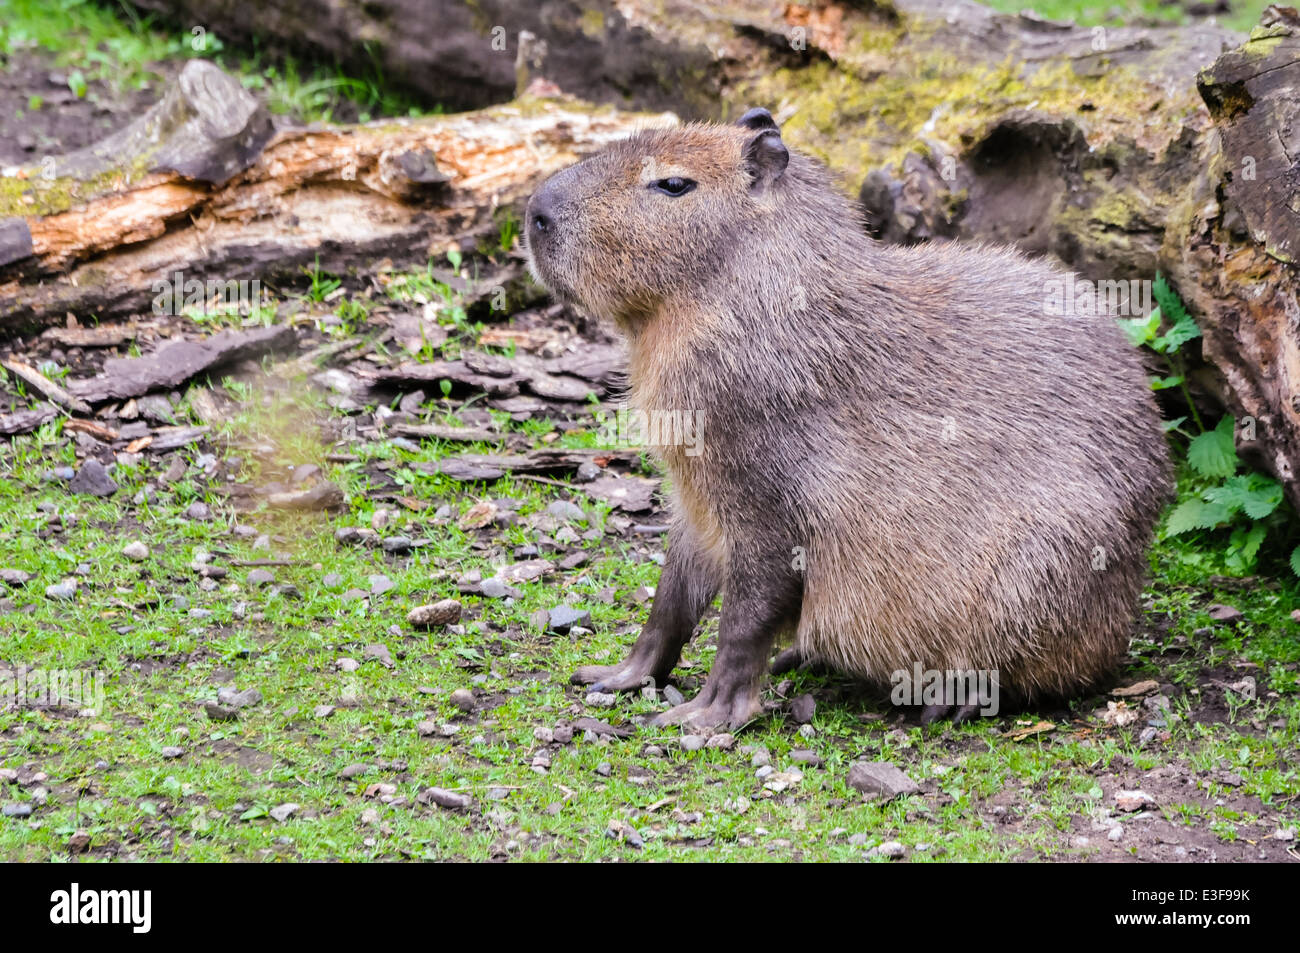 Capybara (Hydrochoerus hydrochaeris), le plus grand rongeur du monde Banque D'Images